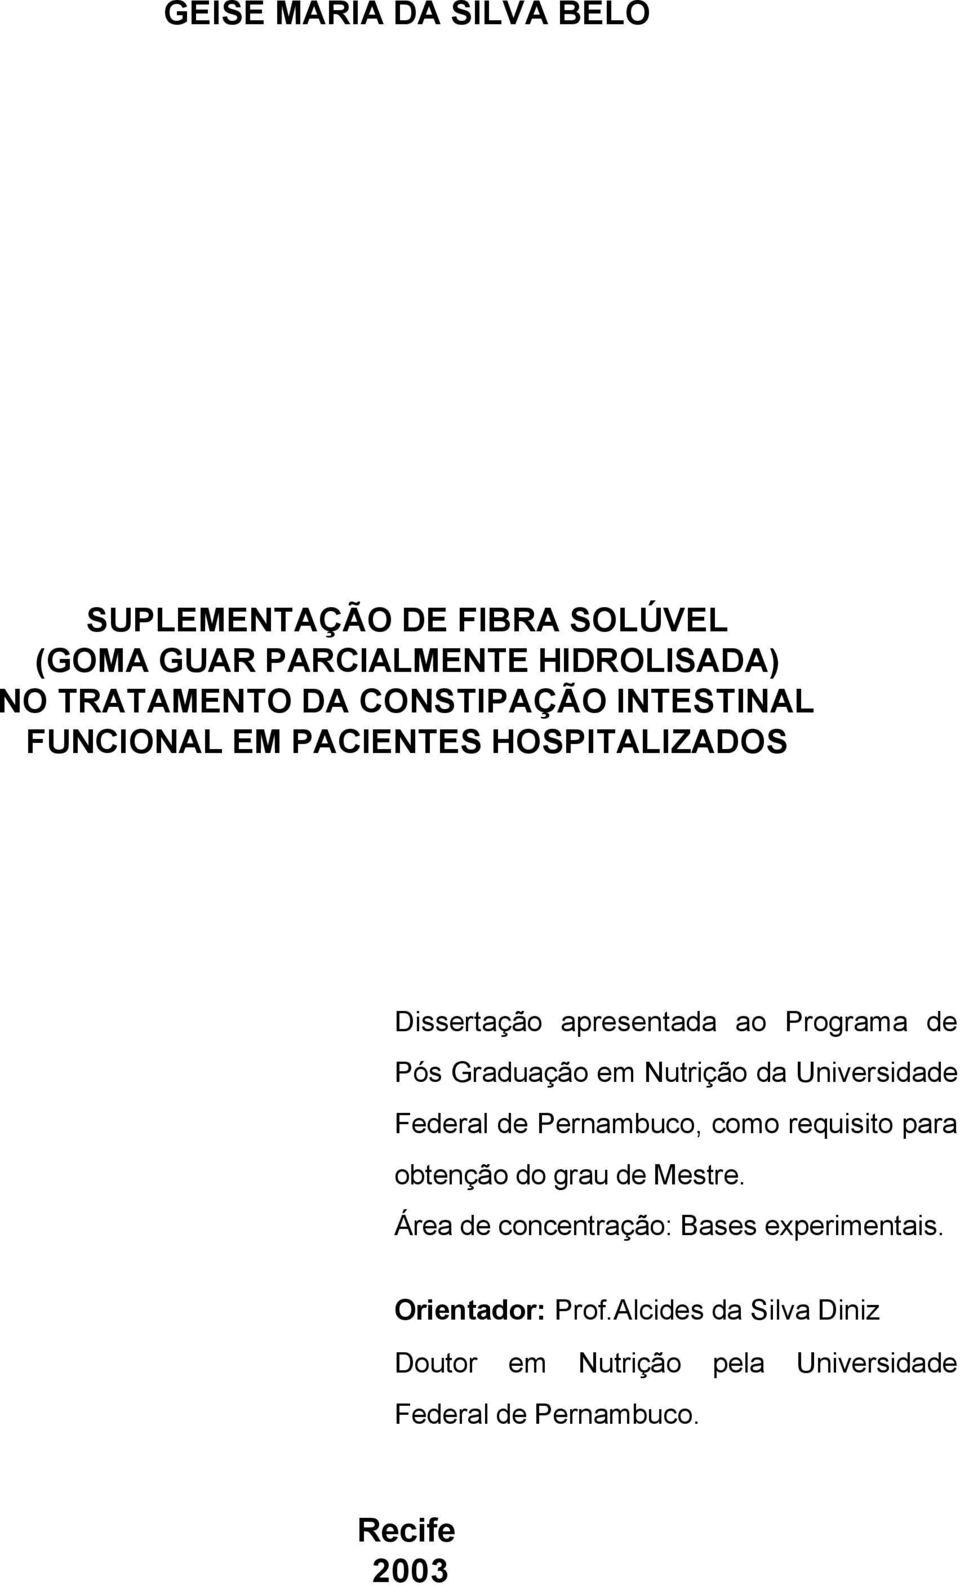 Nutrição da Universidade Federal de Pernambuco, como requisito para obtenção do grau de Mestre.